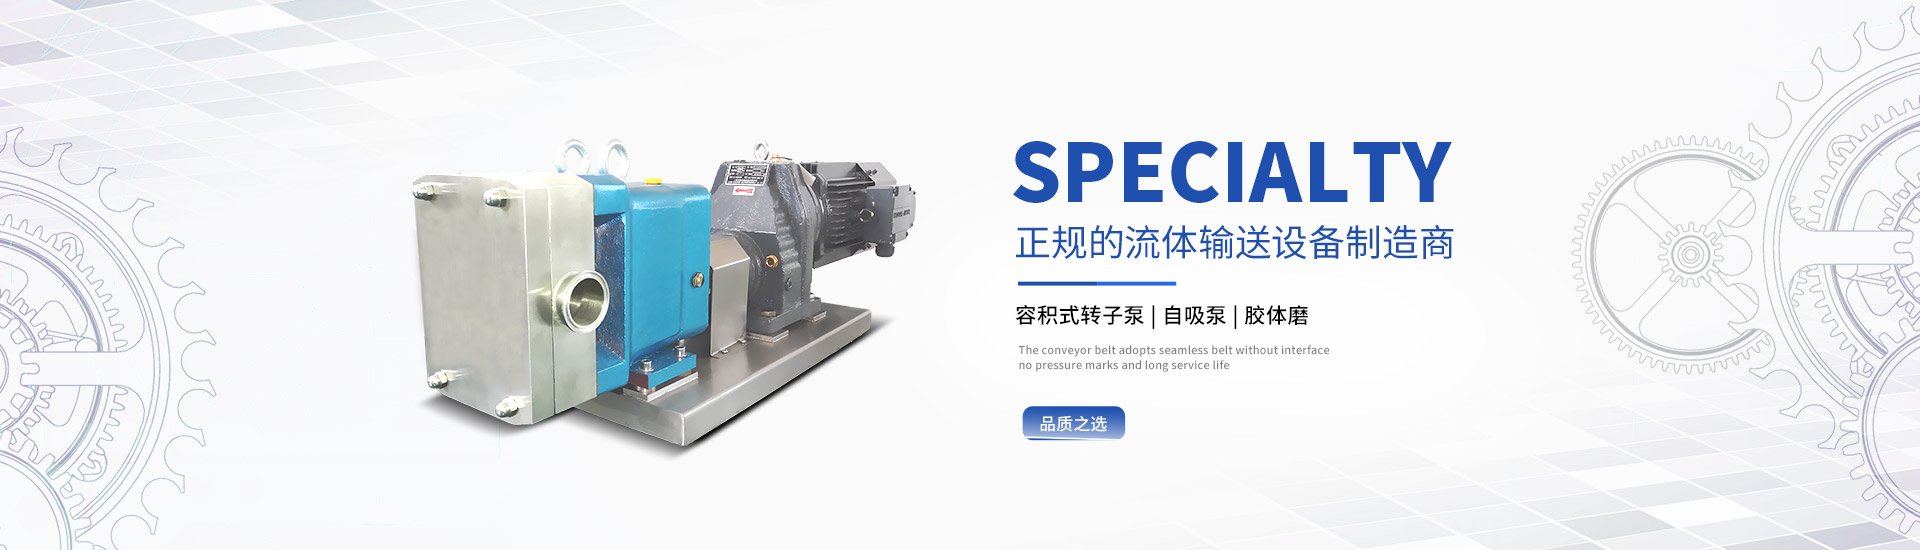 上海轉子泵制造商